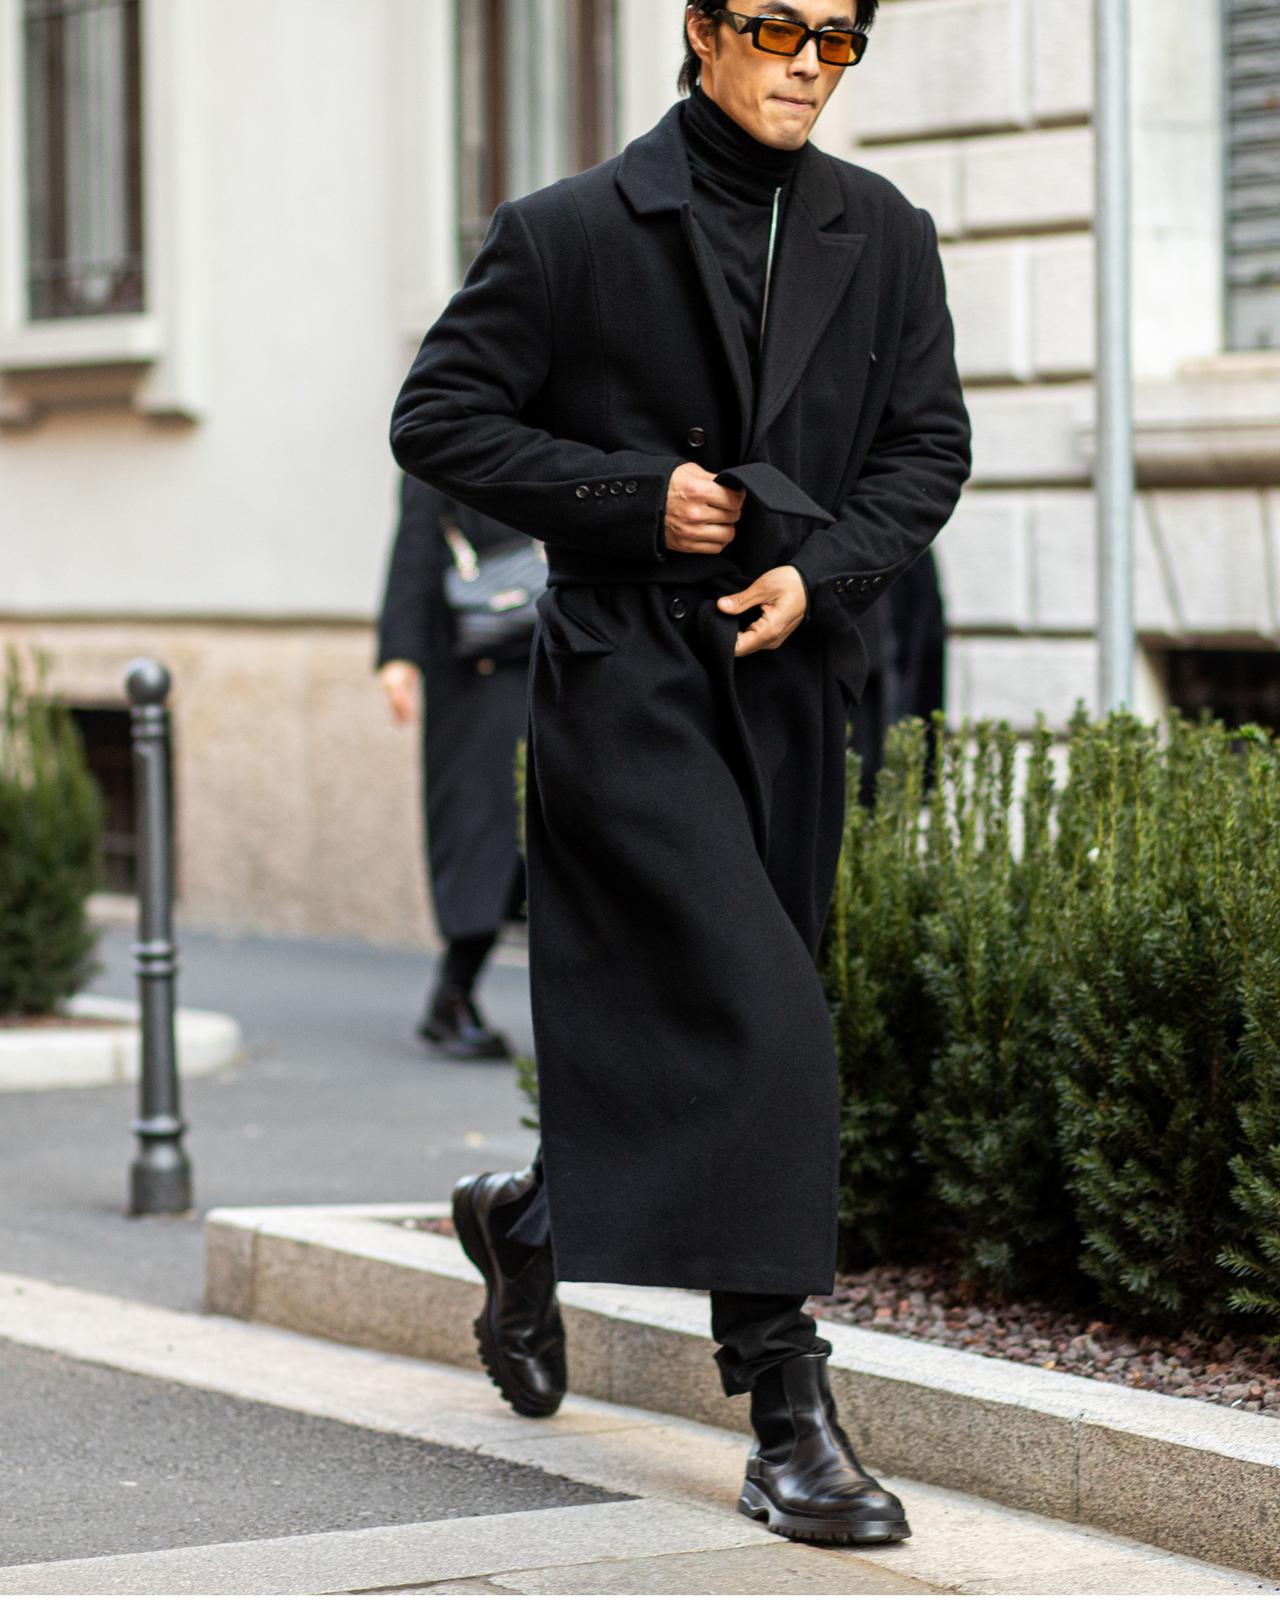 Un homme en manteau noir marchant dans une rue